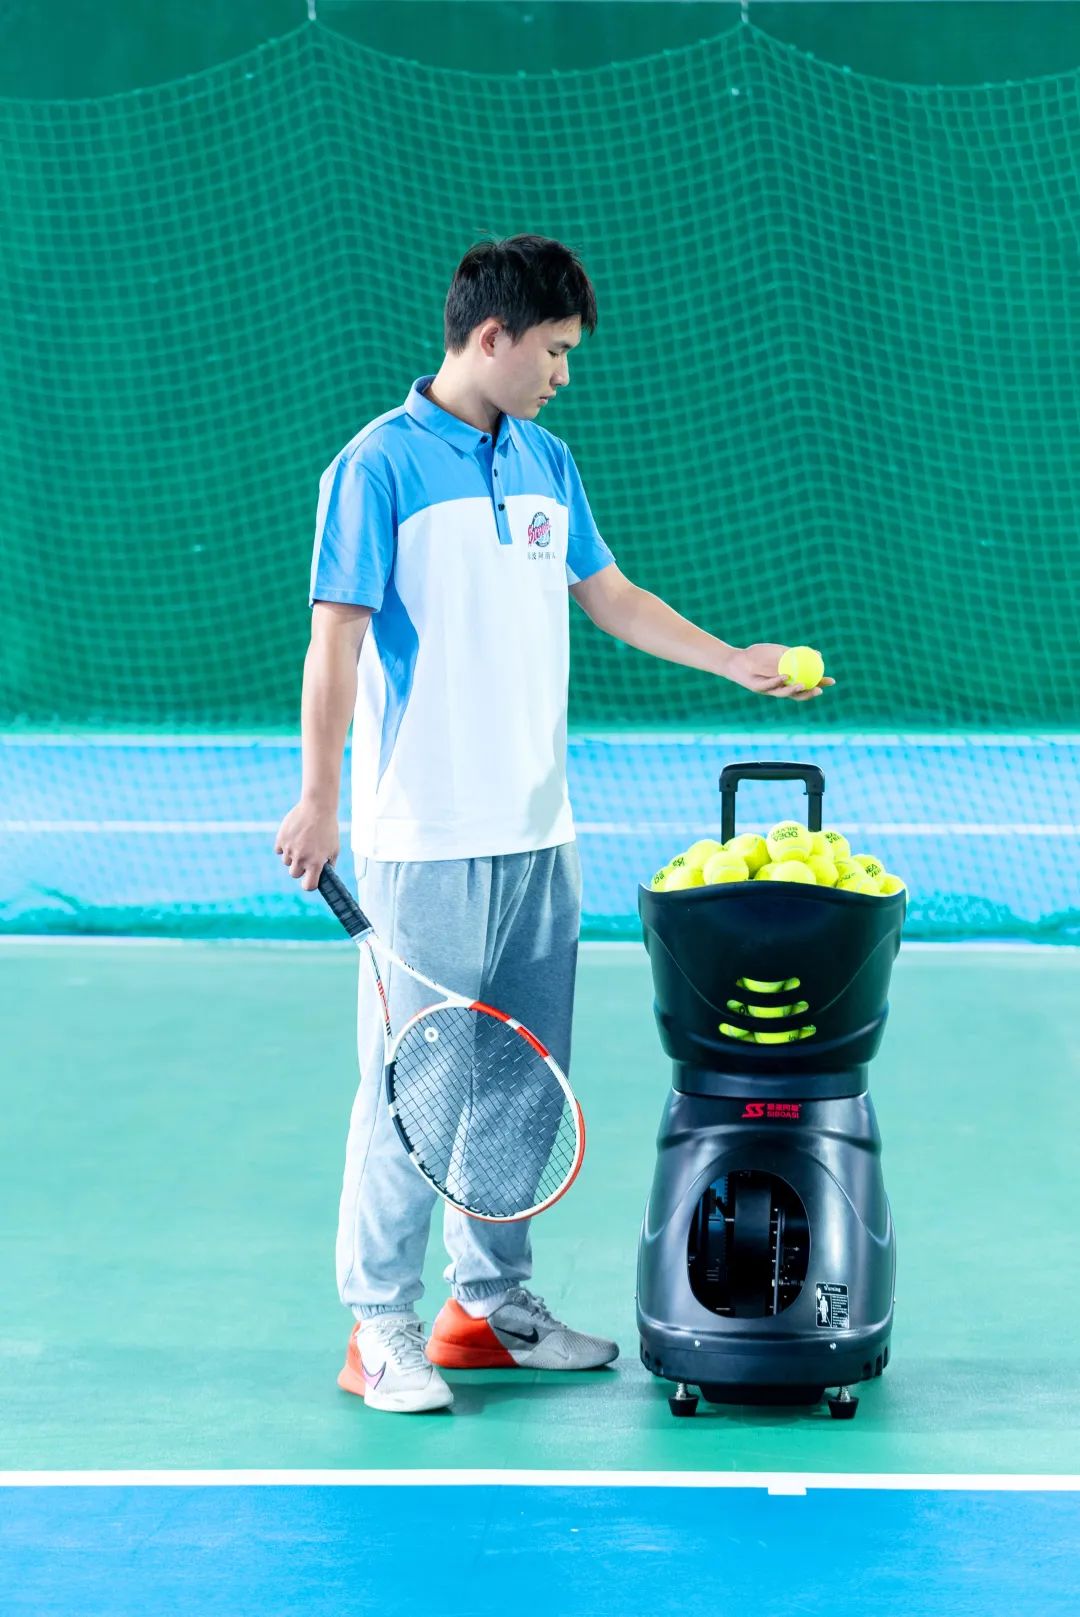 Tennis Serving Machine